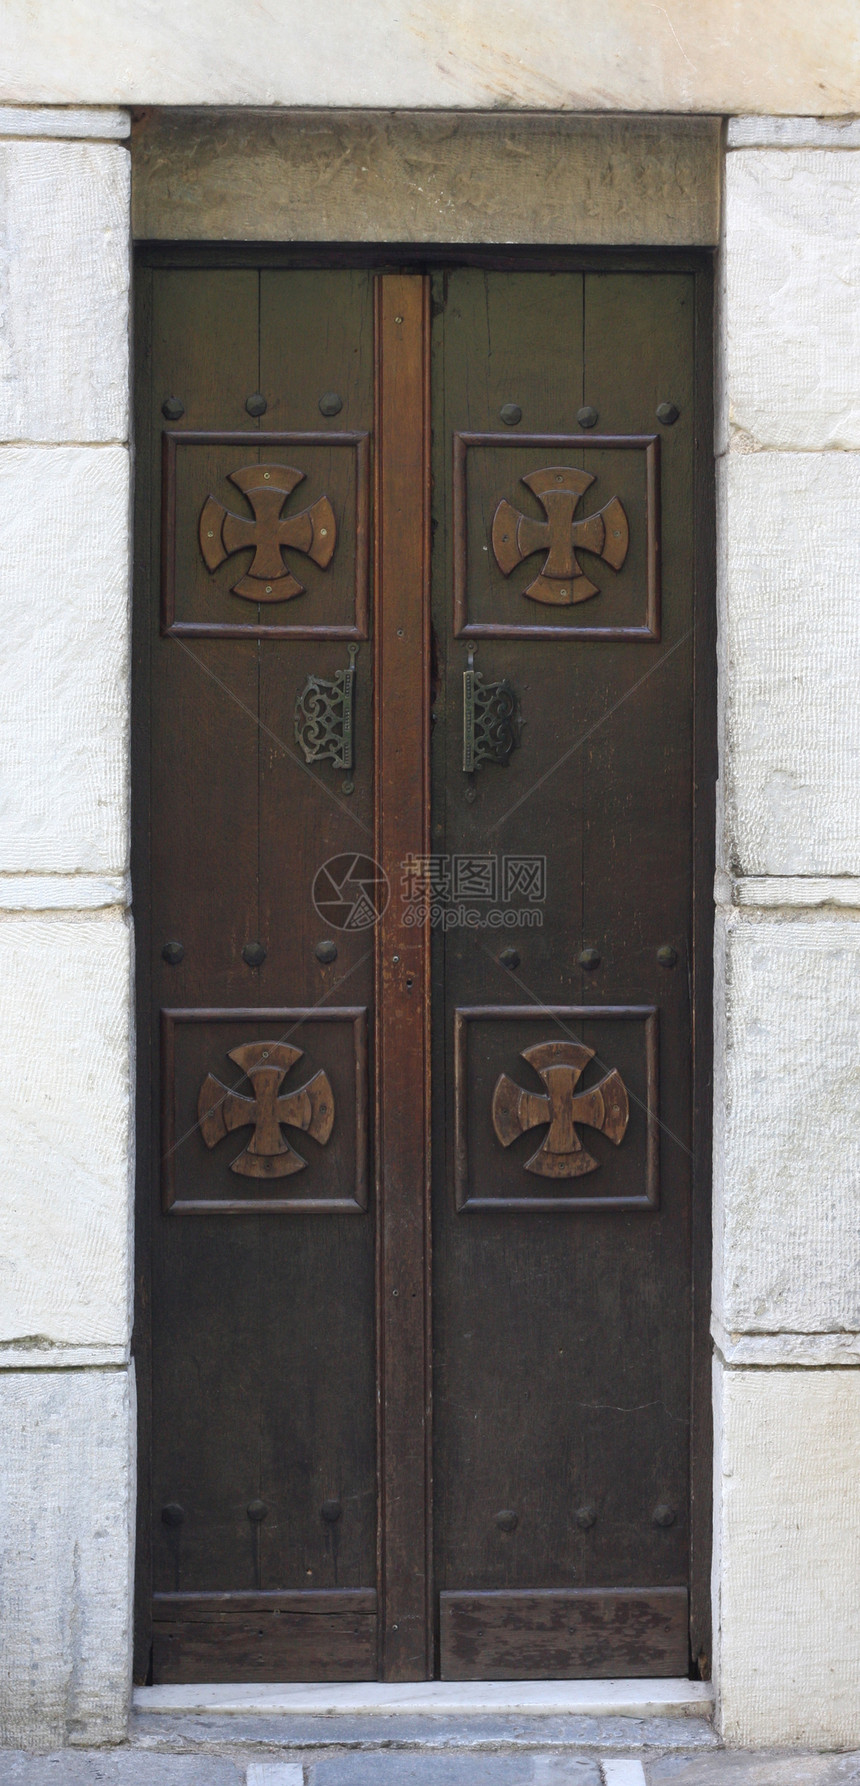 古老东正教门宗教建筑安全框架门把手乡村古董建筑学雕刻品入口图片